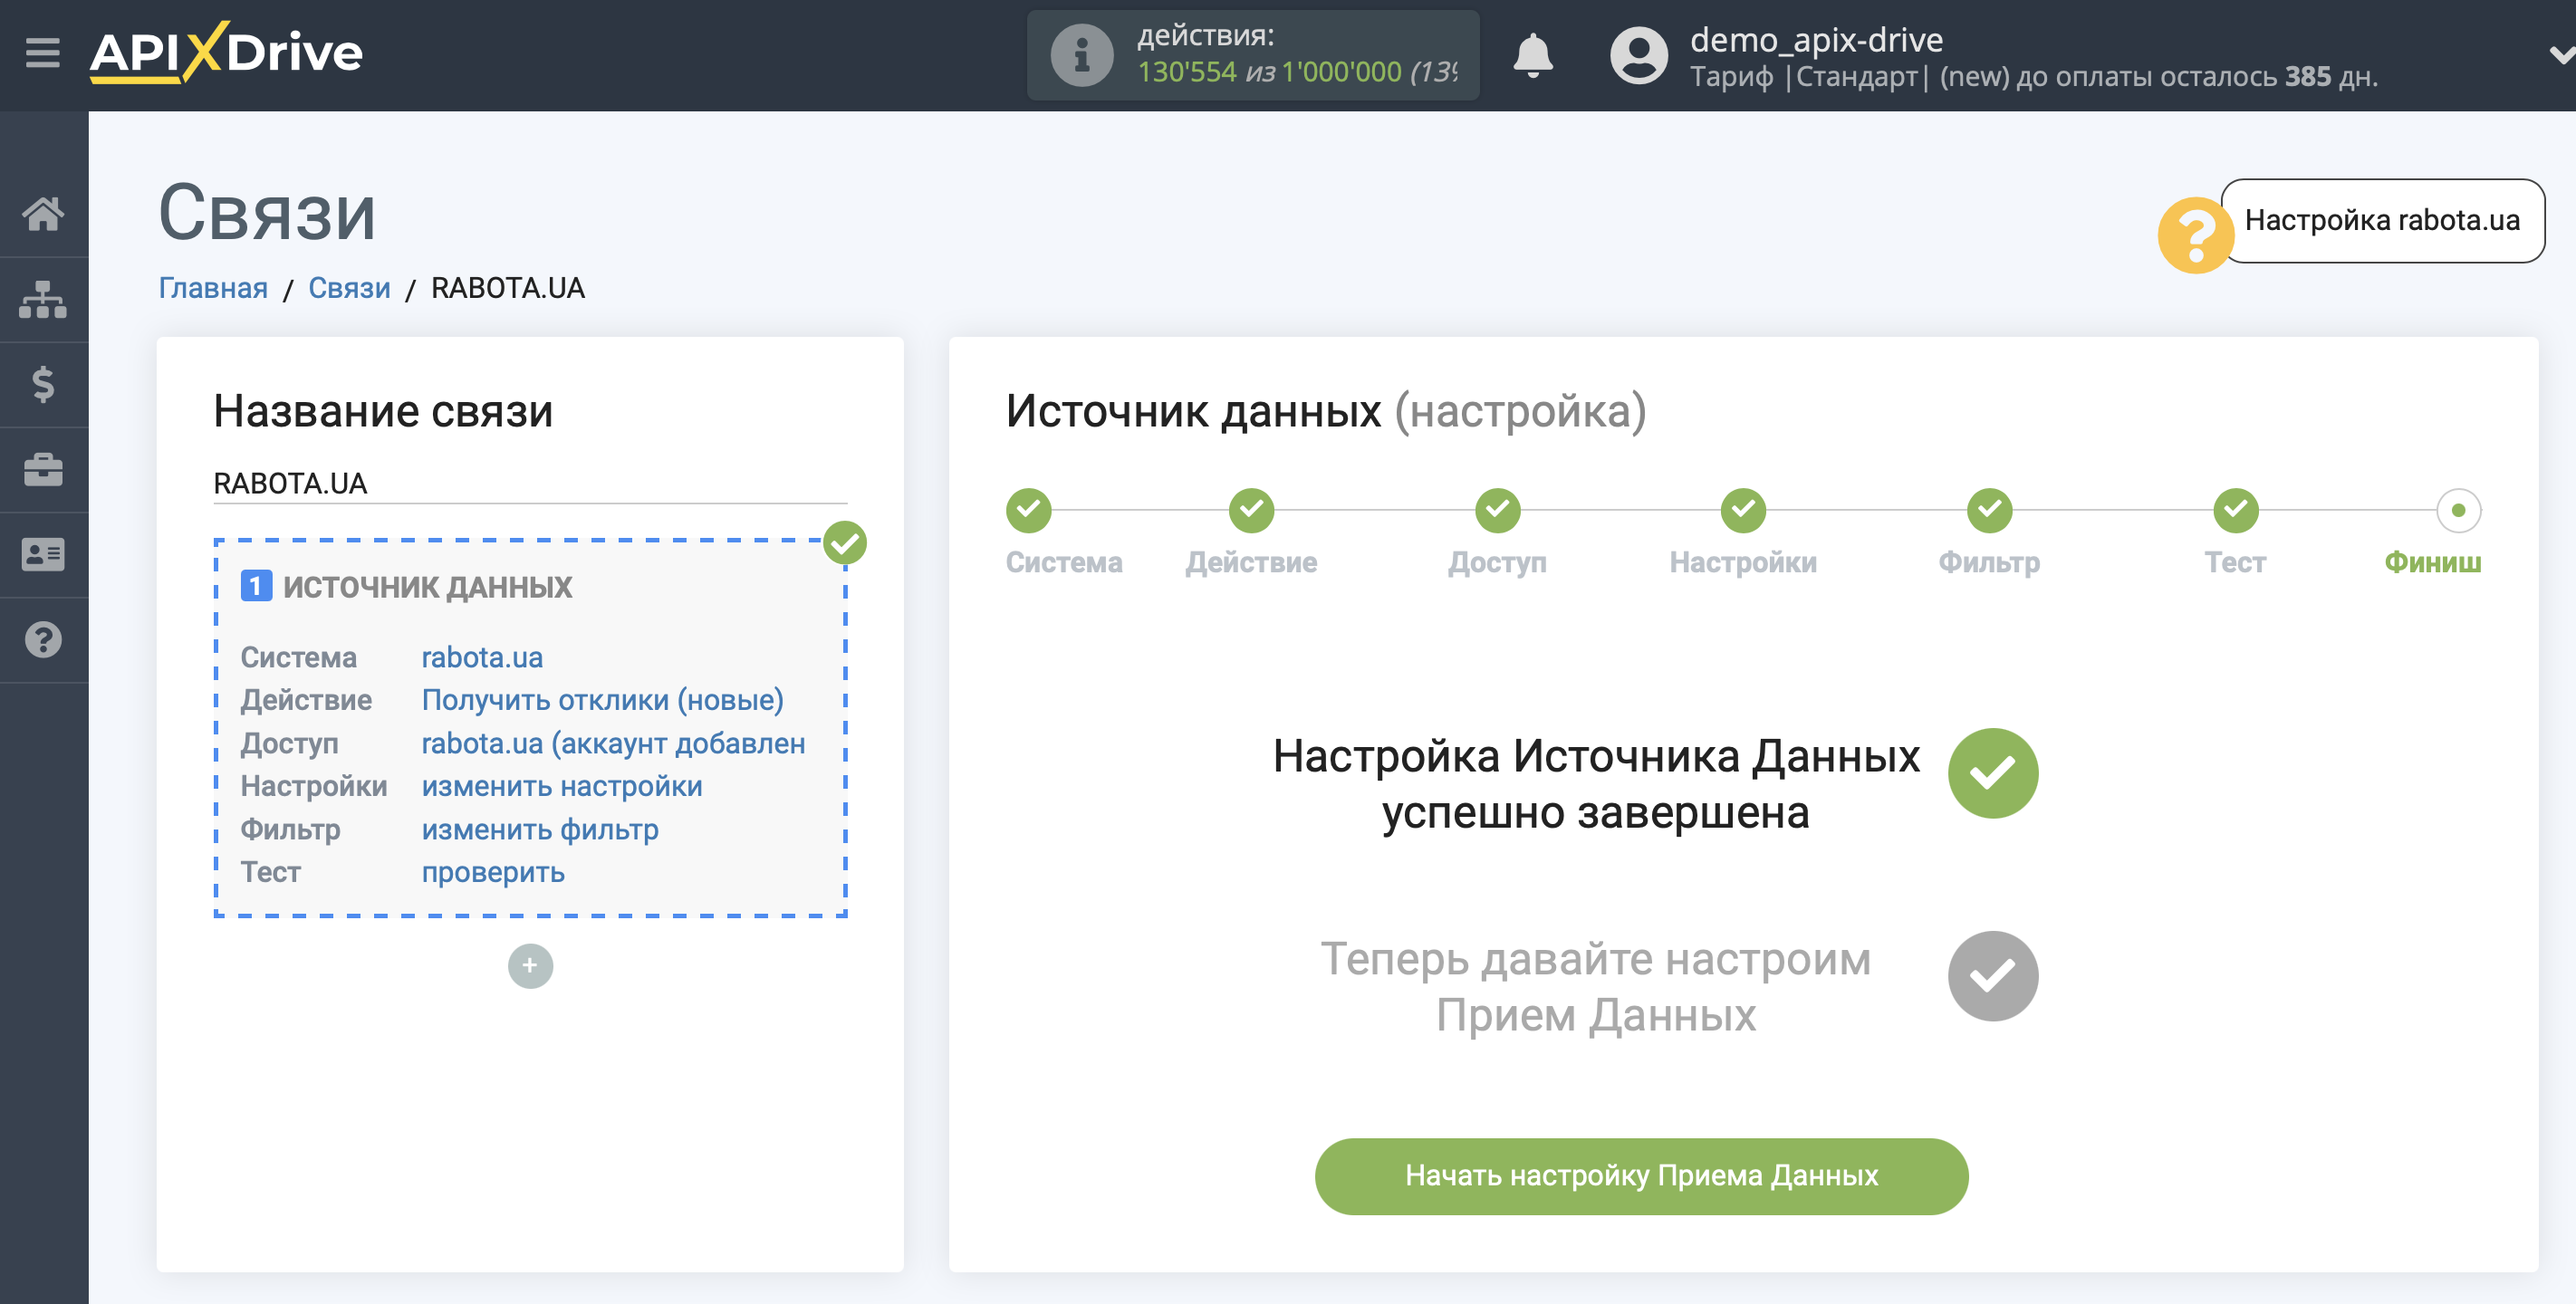 Настройка robota.ua  | Переход к настройке Приема данных